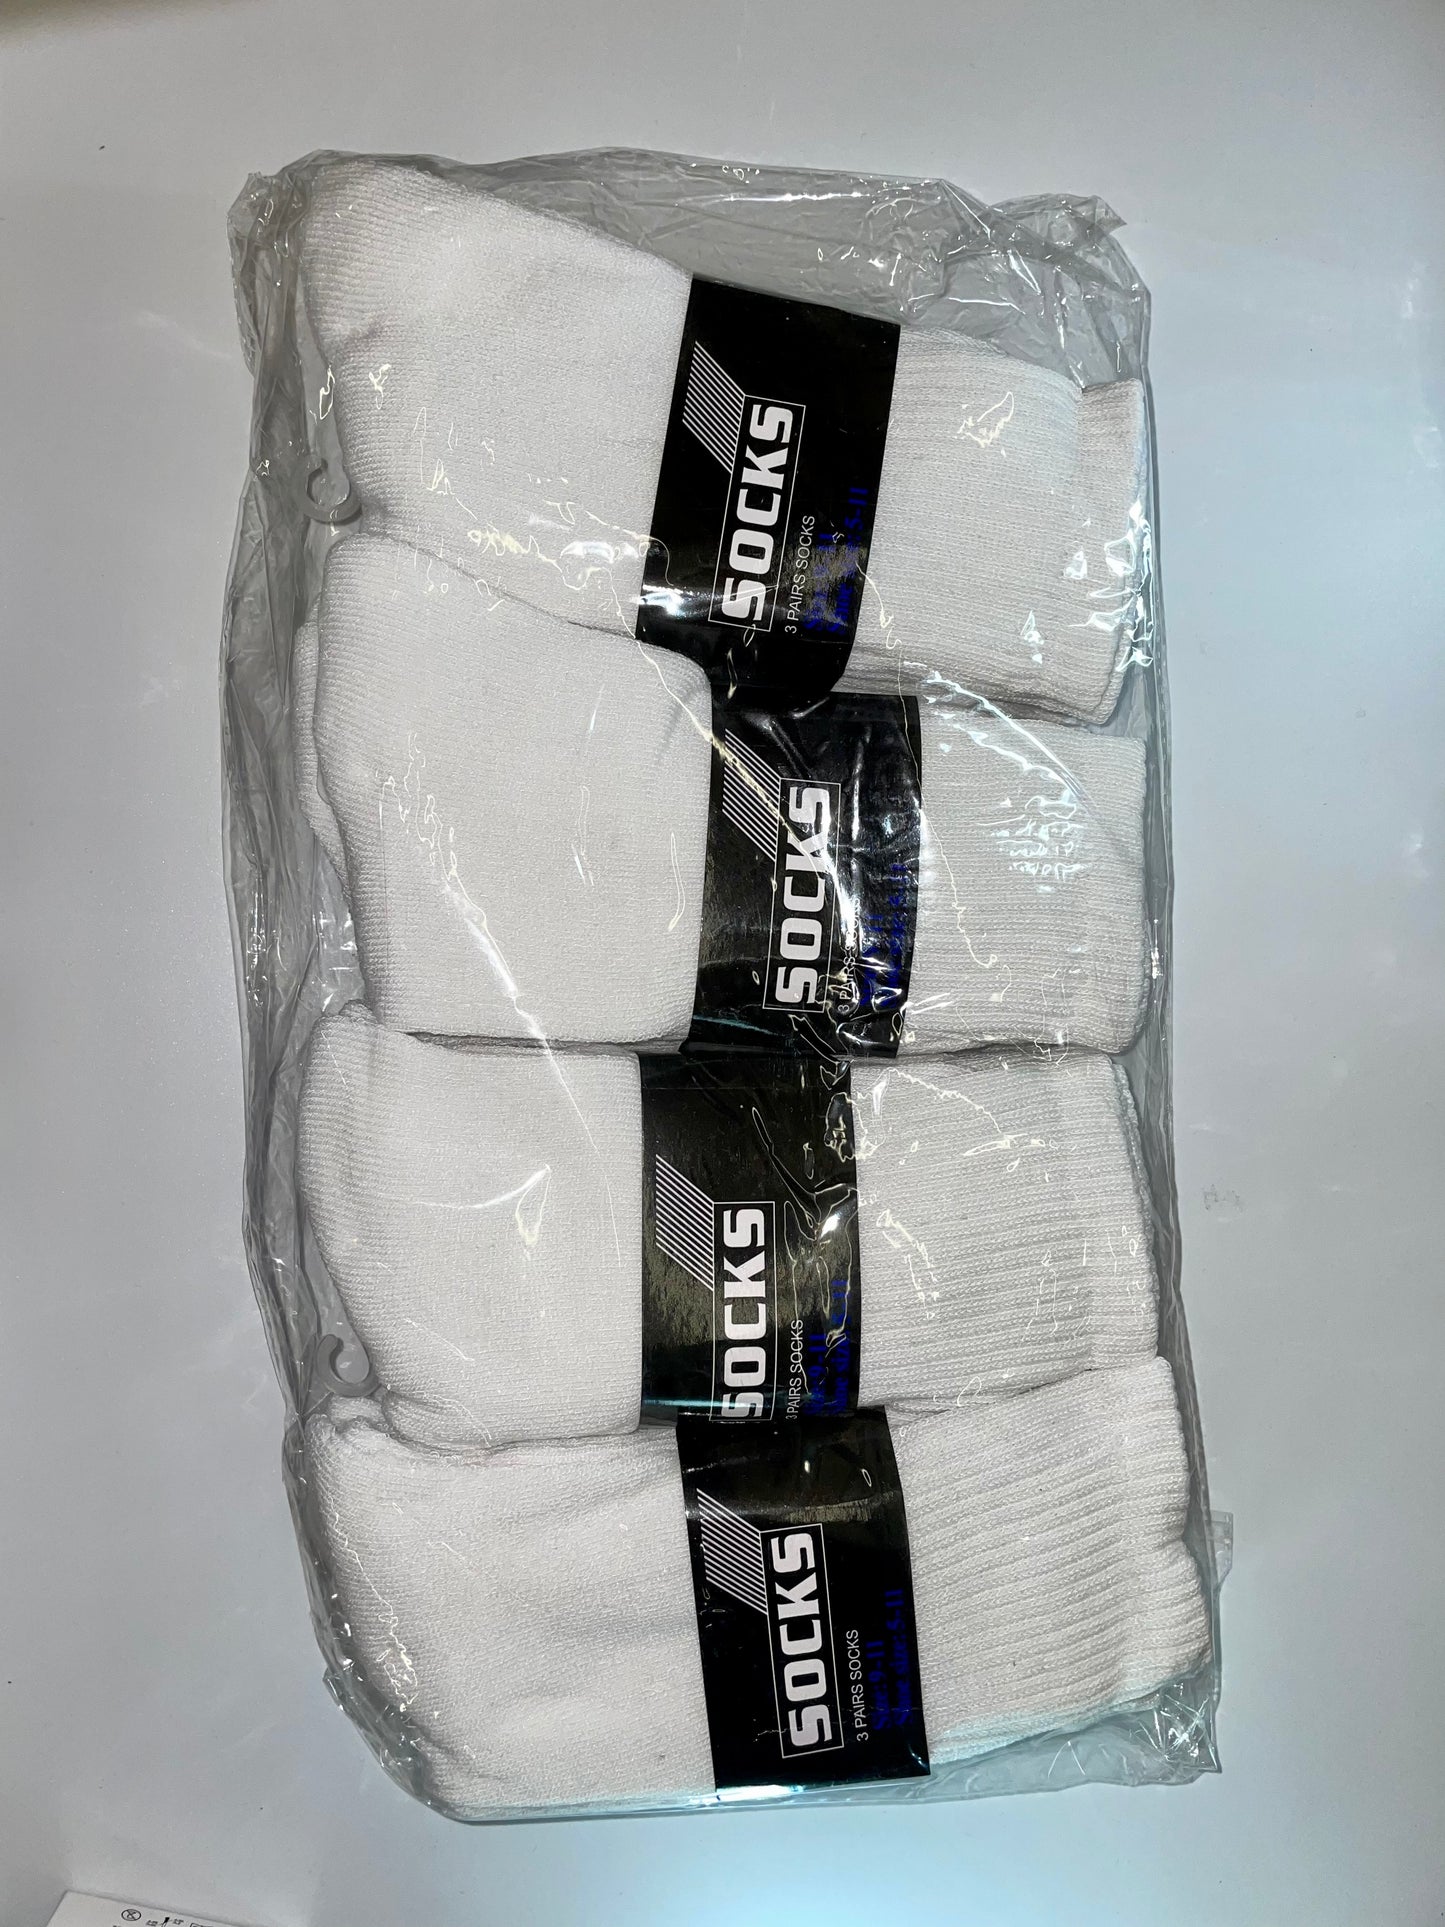 men crew socks(pack of 12 pairs)